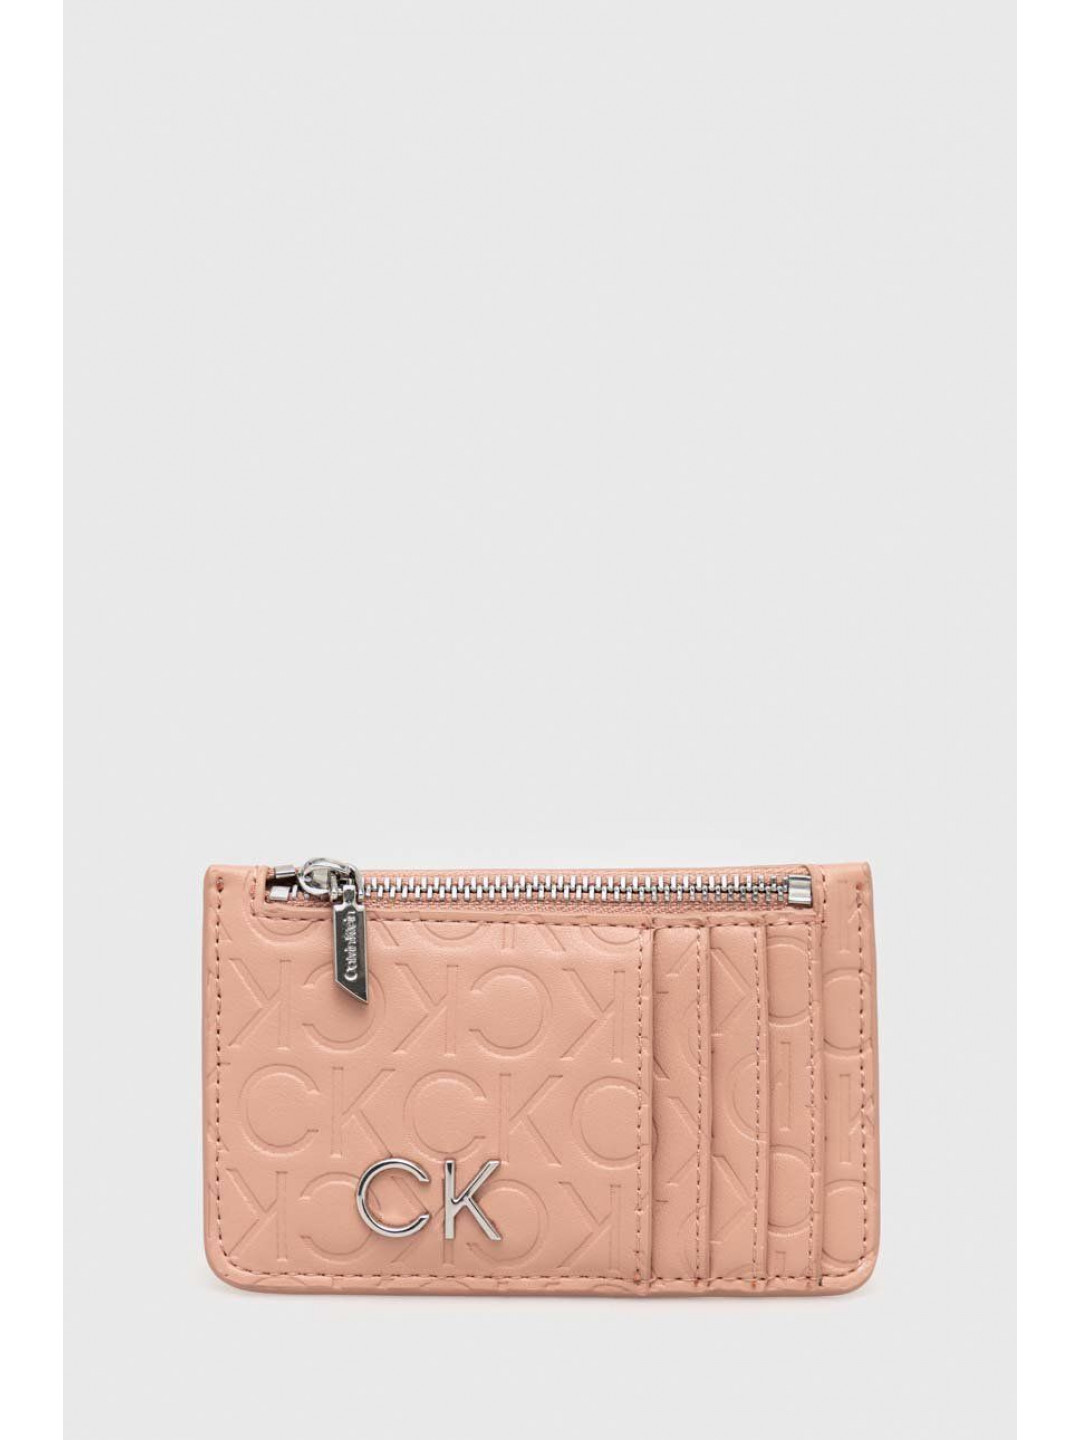 Peněženka Calvin Klein růžová barva